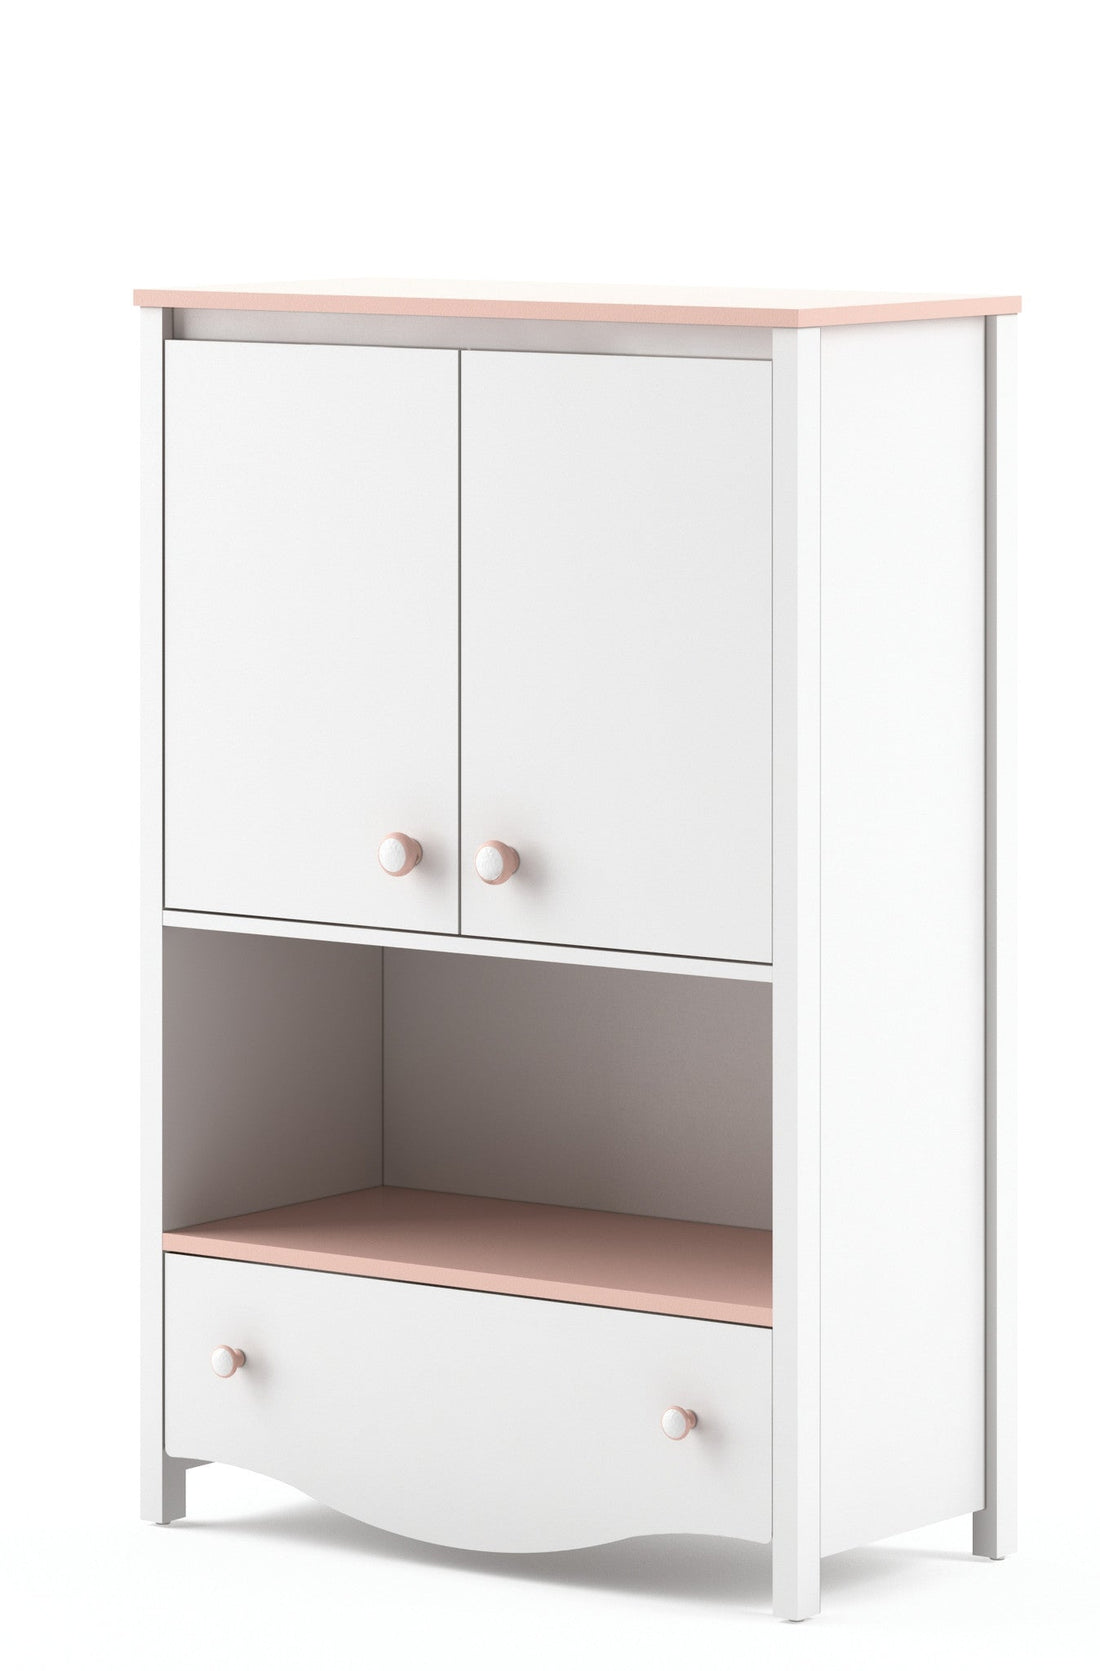 Mia MI-11 Sideboard Cabinet - £183.6 - Kids Sideboard Cabinet 